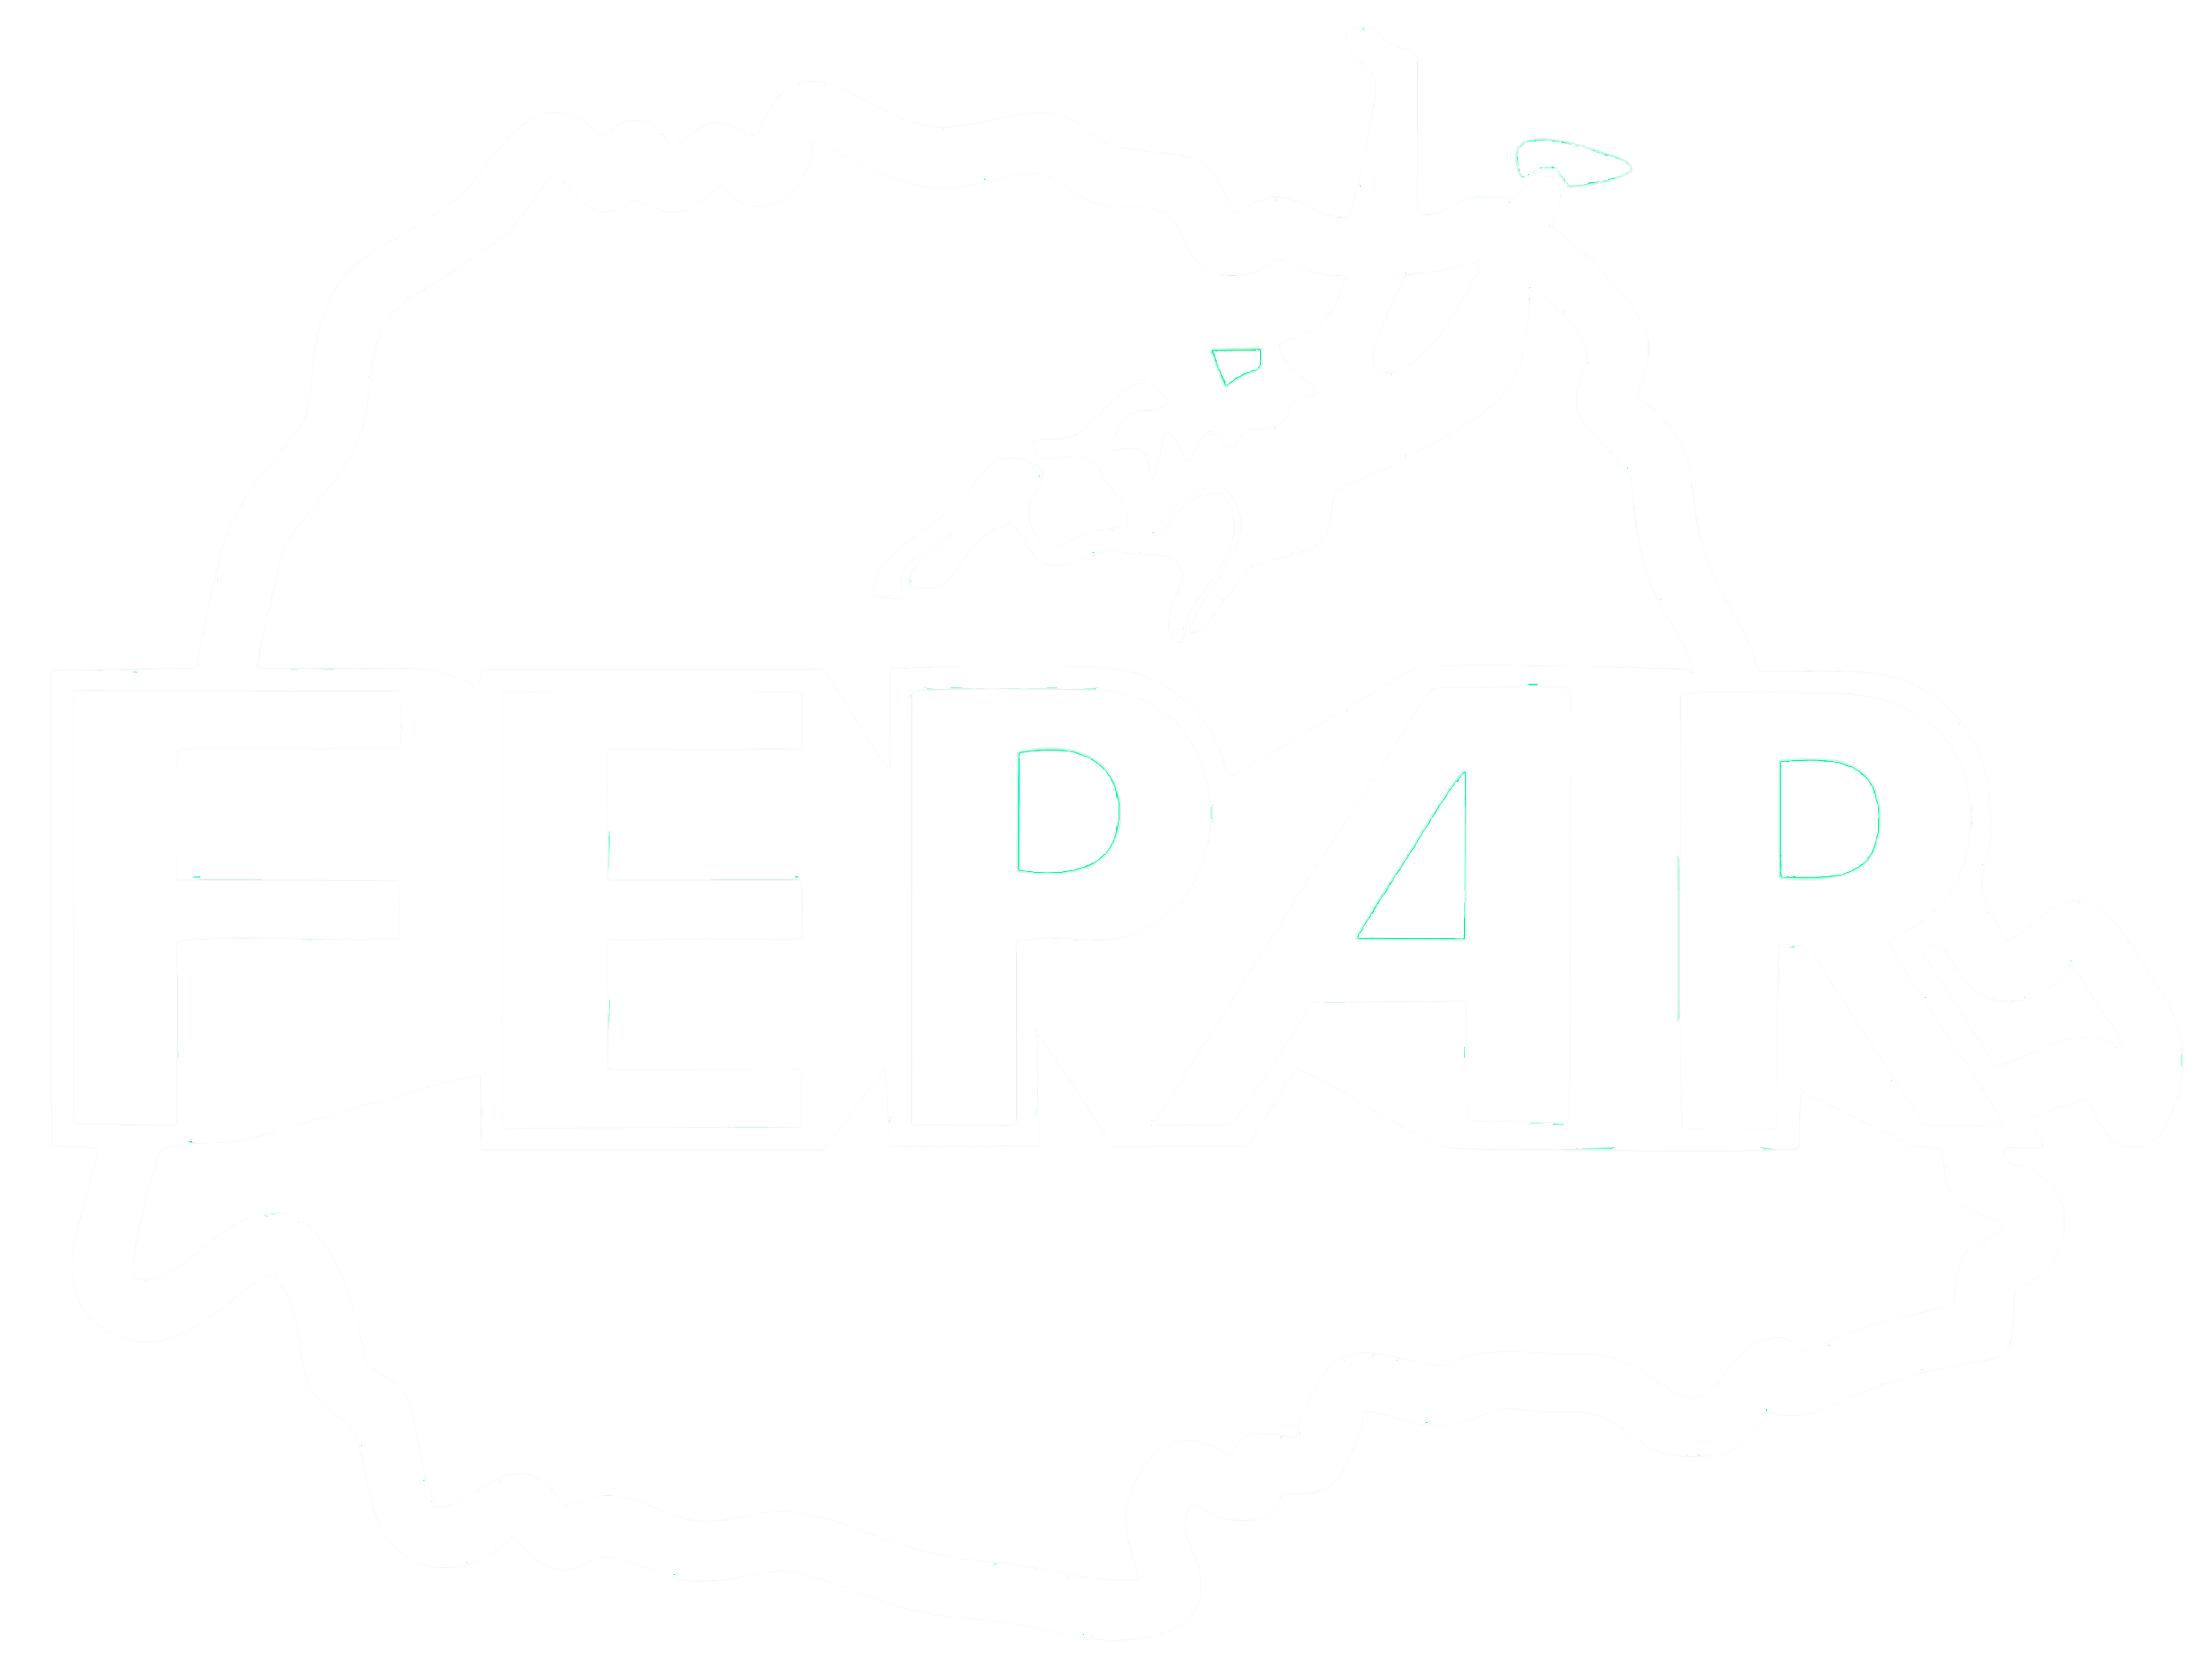 FEPAR - Federação Paranaense de Paraquedismo